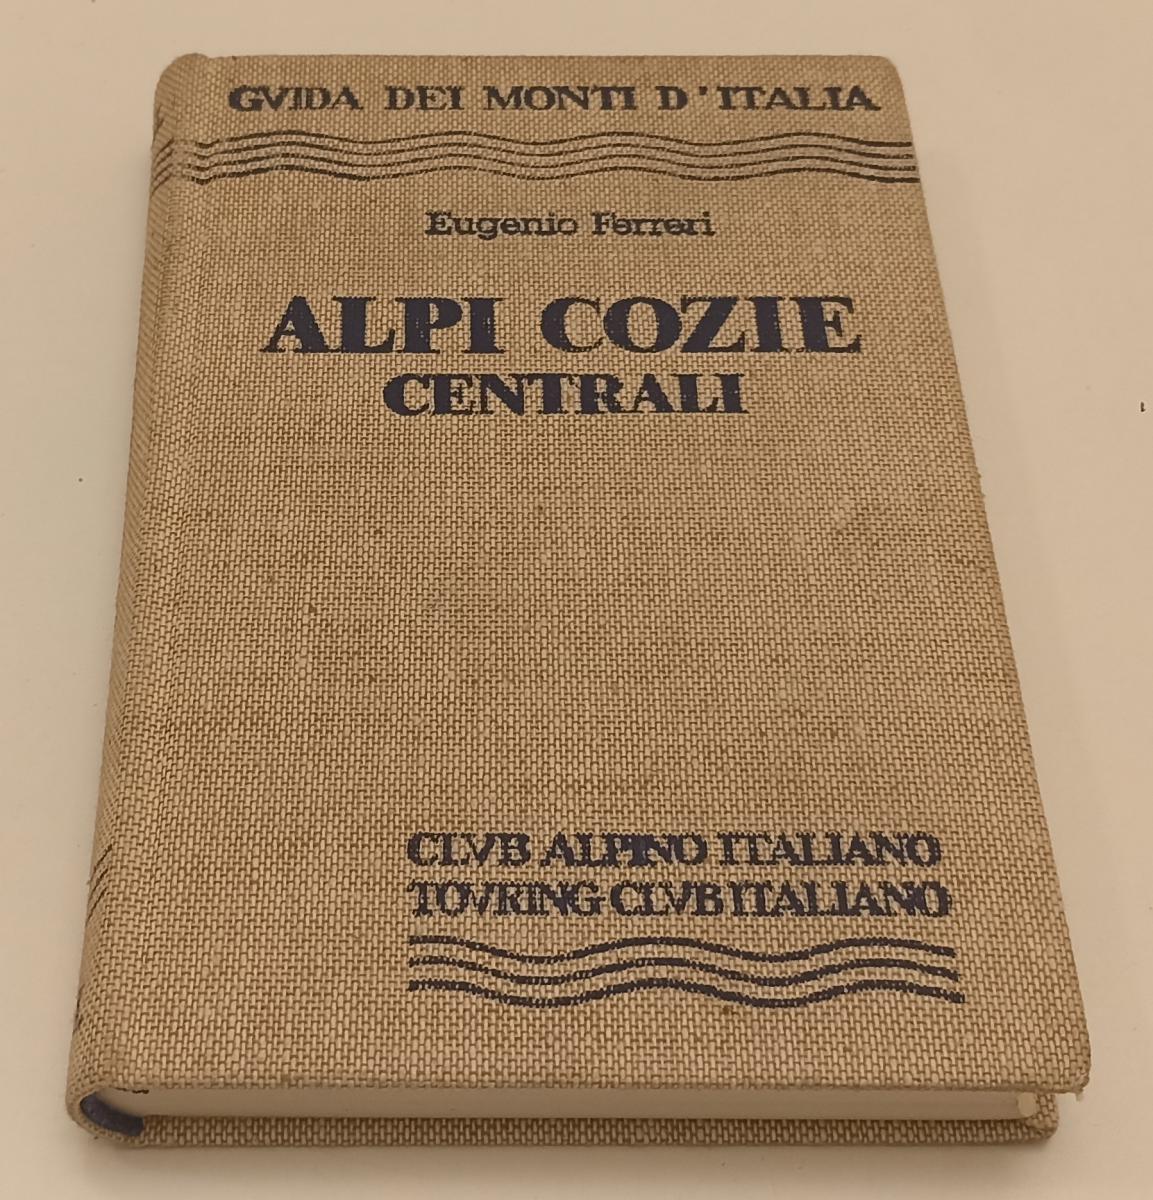 LV- GUIDA DEI MONTI D'ITALIA ALPI COZIE CENTRALI - FERRERI- TCI- 1982- C- XFS92